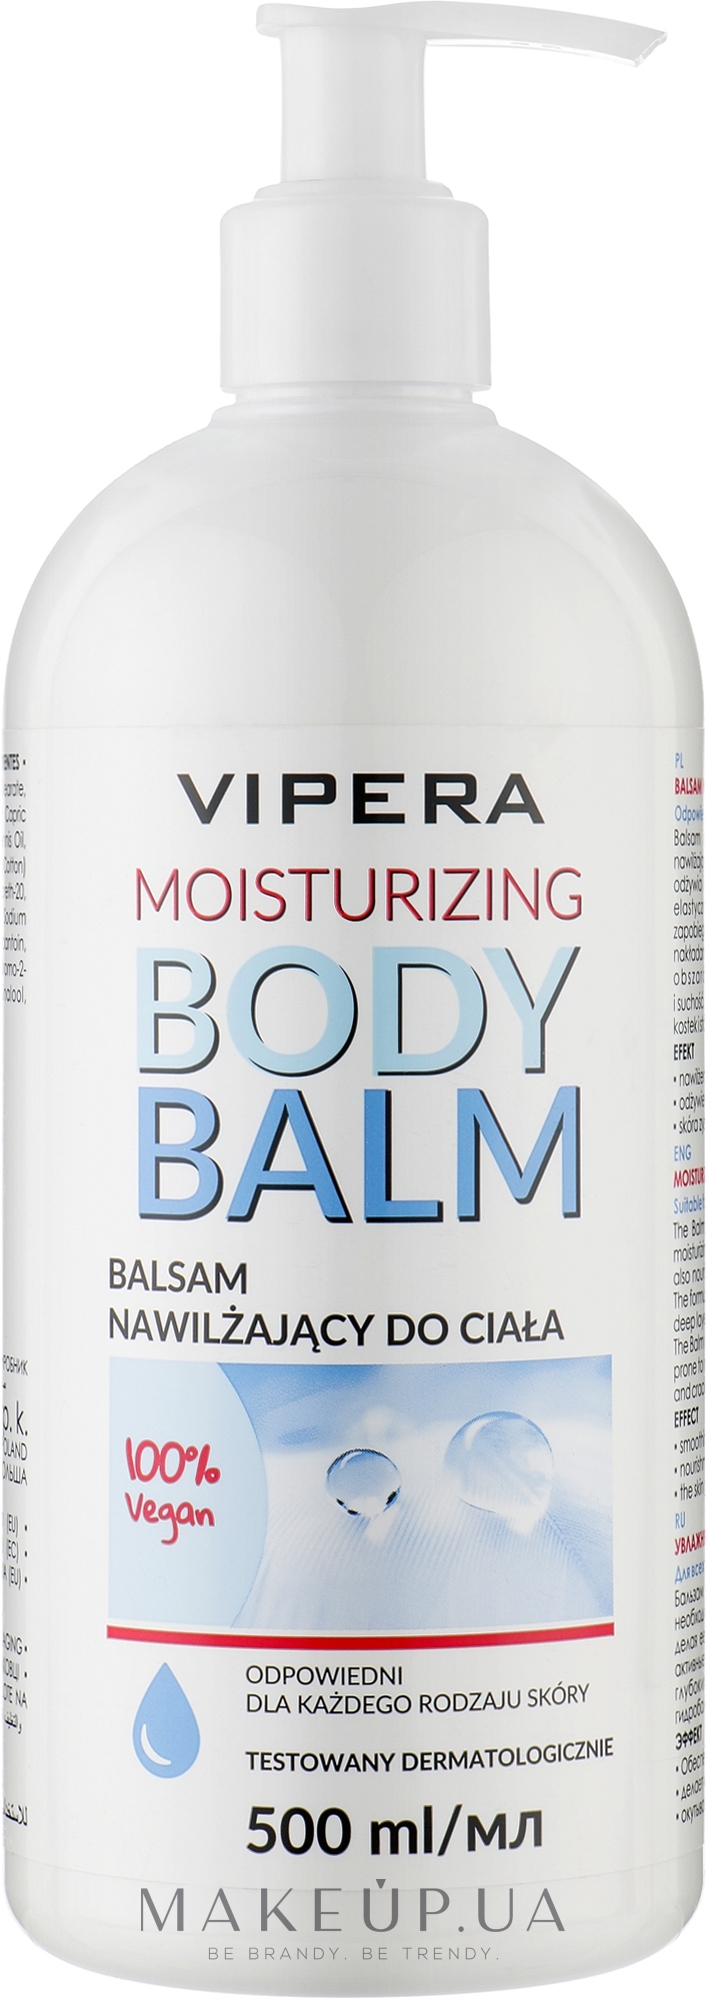 Зволожувальний бальзам для тіла для сухої шкіри - Vipera Moisturising Body Balm For Dry Skin — фото 500ml